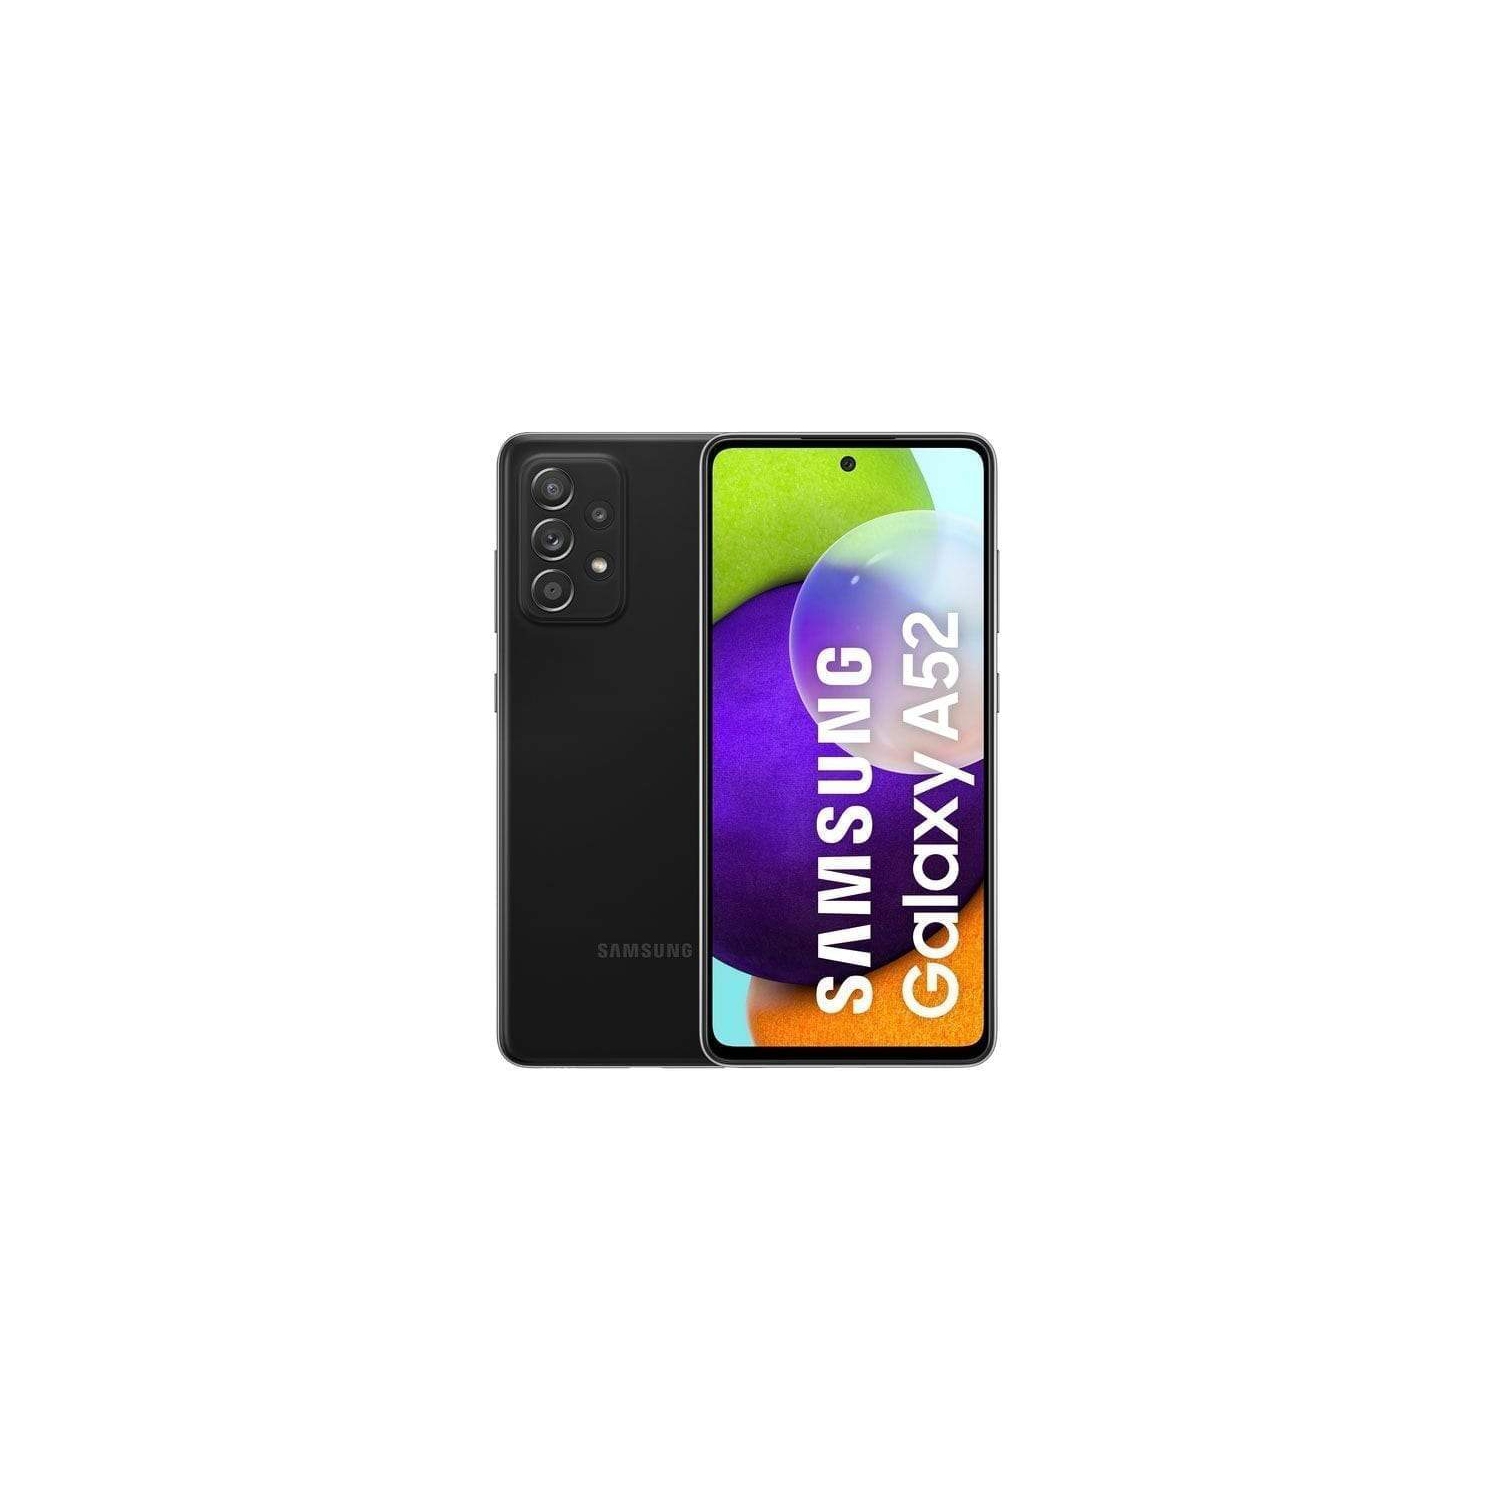 Samsung Galaxy A52 (A525F DS) (Dual SIM, 256GB/8GB, Awesome Black) - Brand New